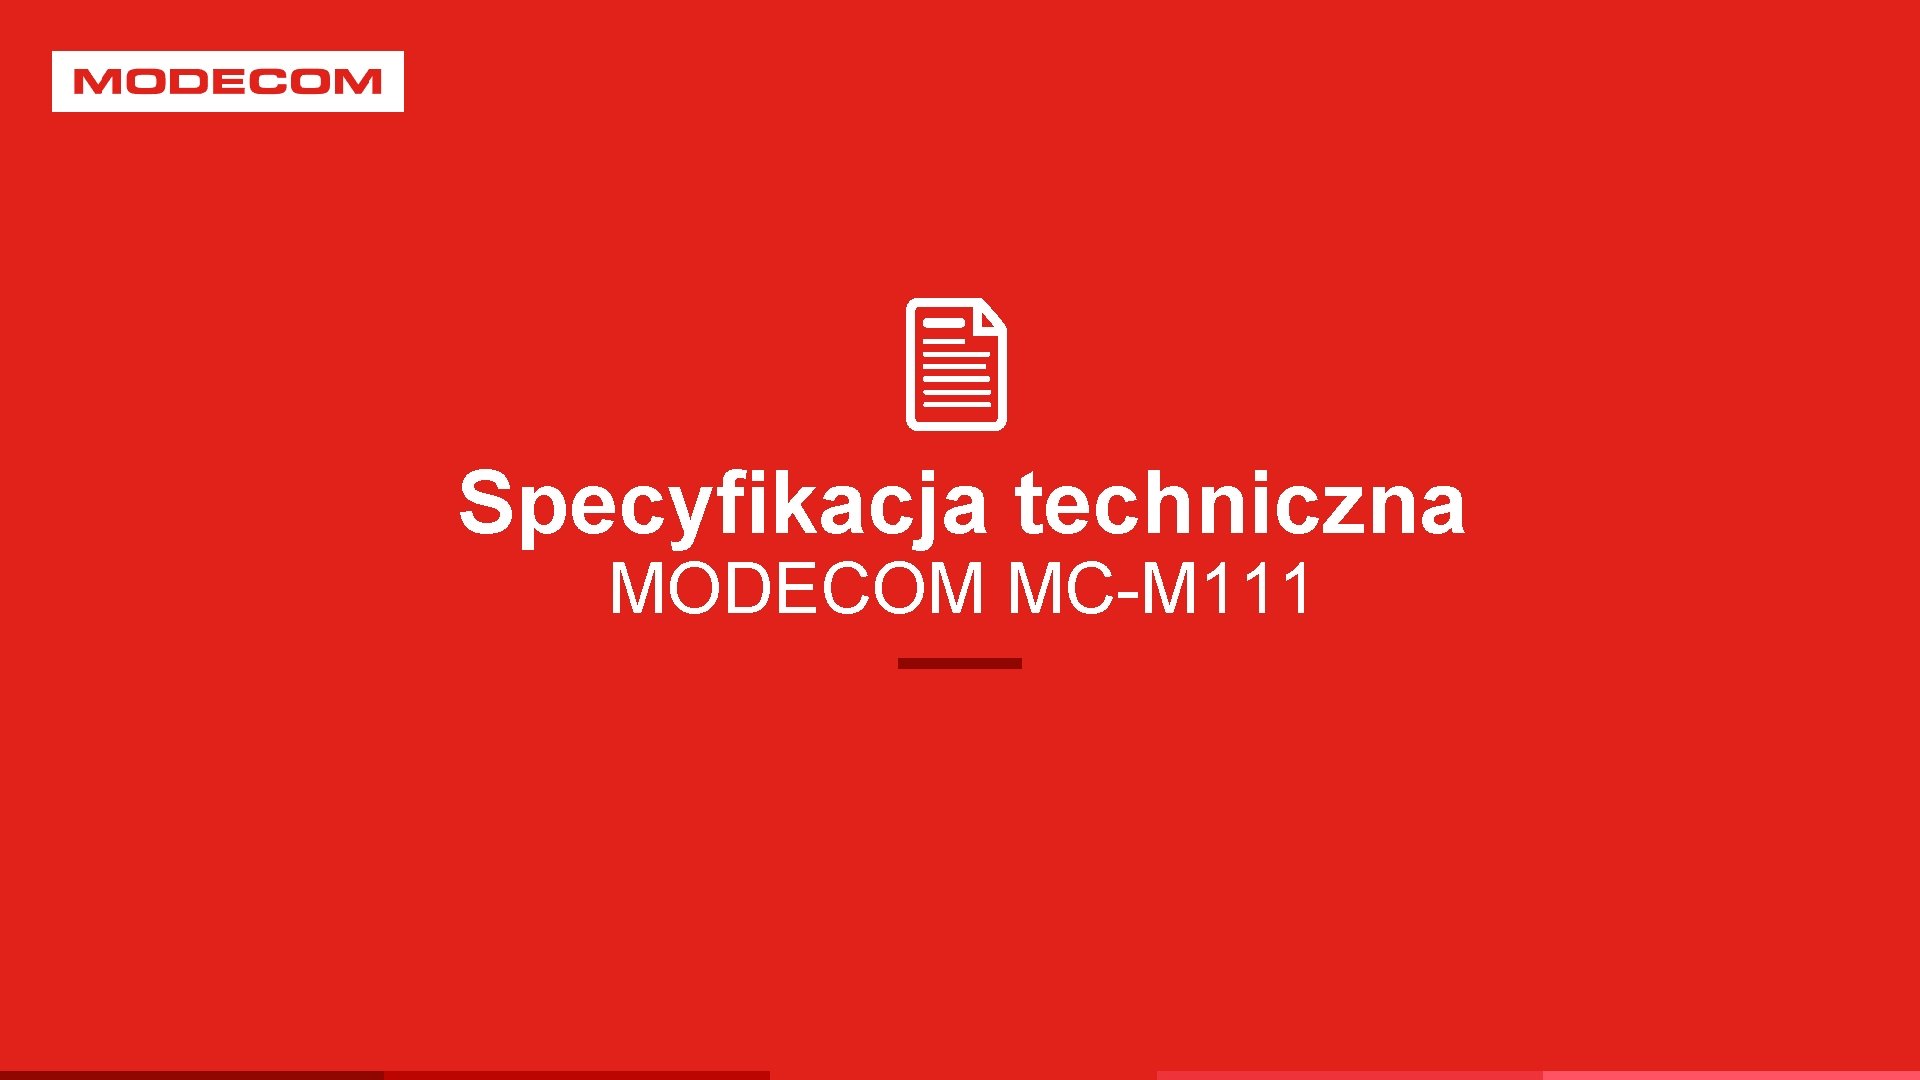 Specyfikacja techniczna MODECOM MC-M 111 